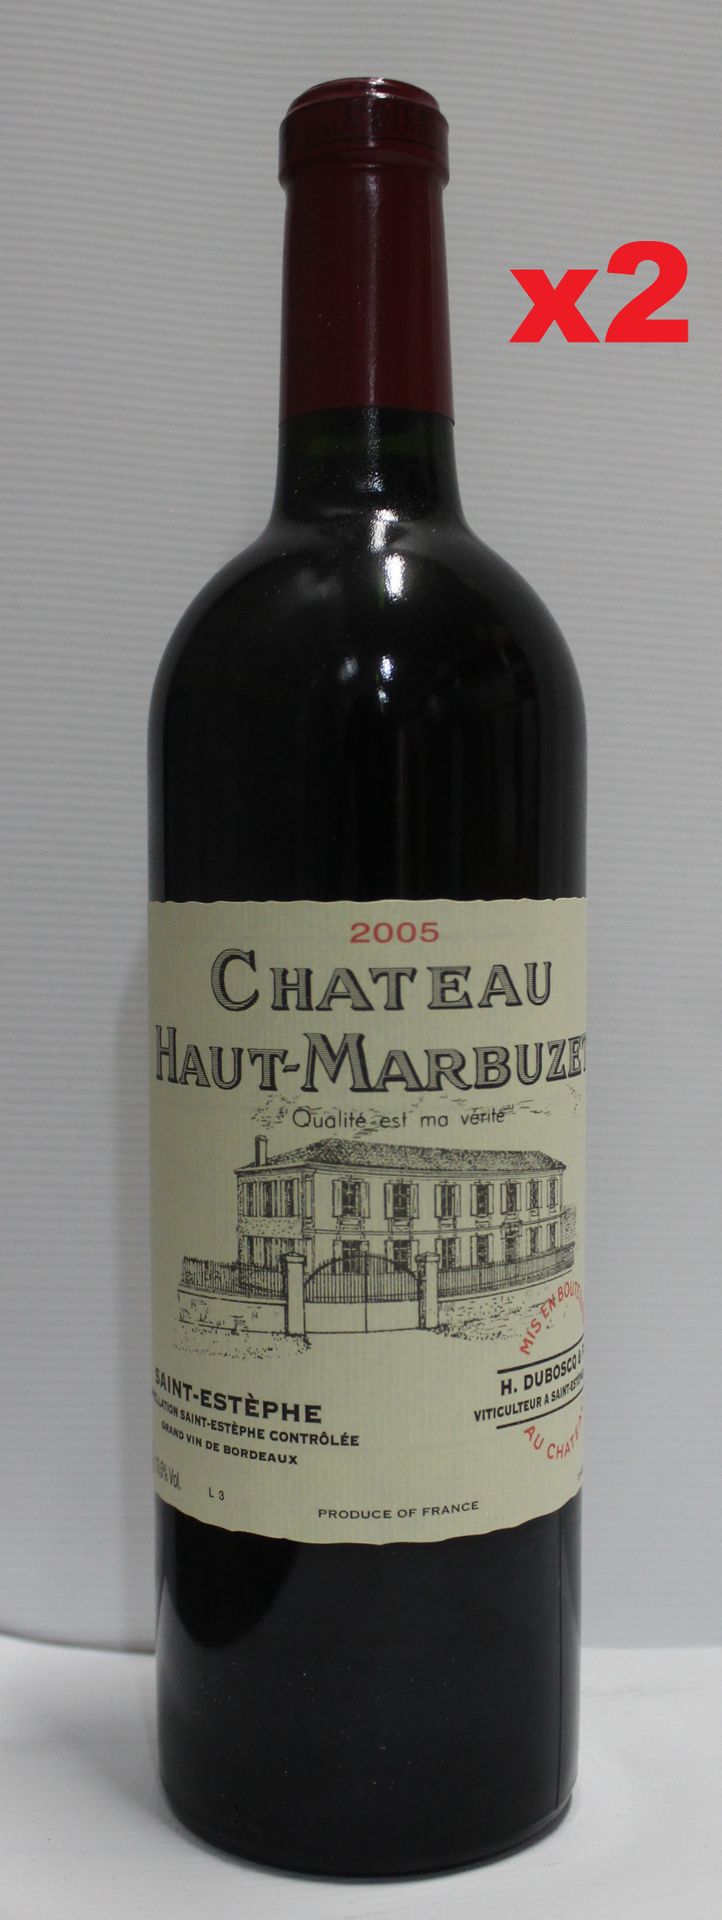 Null 2瓶75cl - 圣埃斯泰夫 - 豪特-马尔布泽酒庄 - 红葡萄酒2005

瓶子完美地保存在理想的温度下。